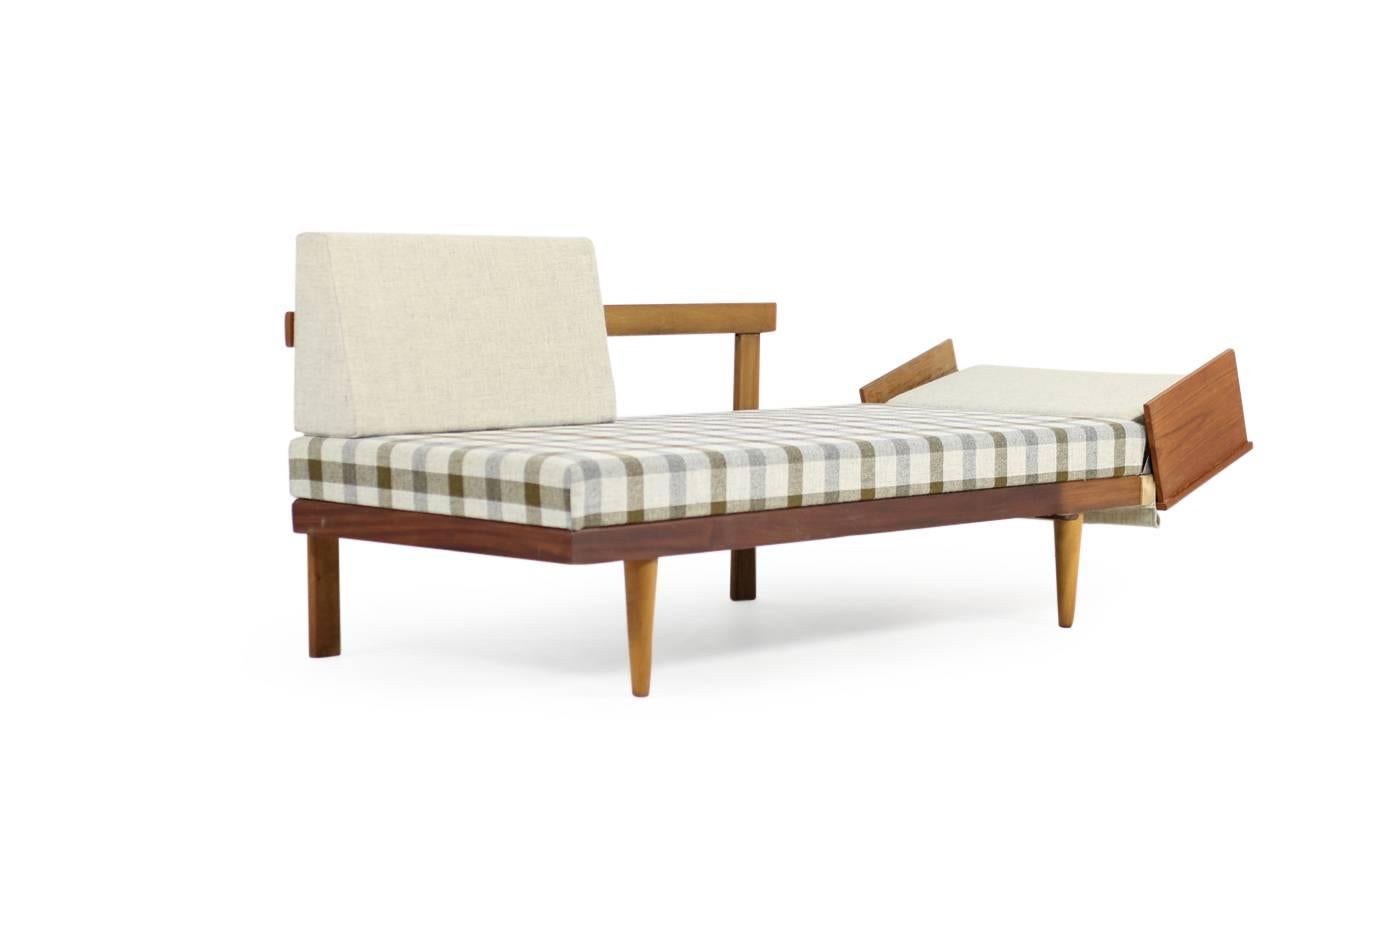 1950s Norwegian Teak & Beechwood Extendable Daybed Svane Møbler Norway Sofa #2 3